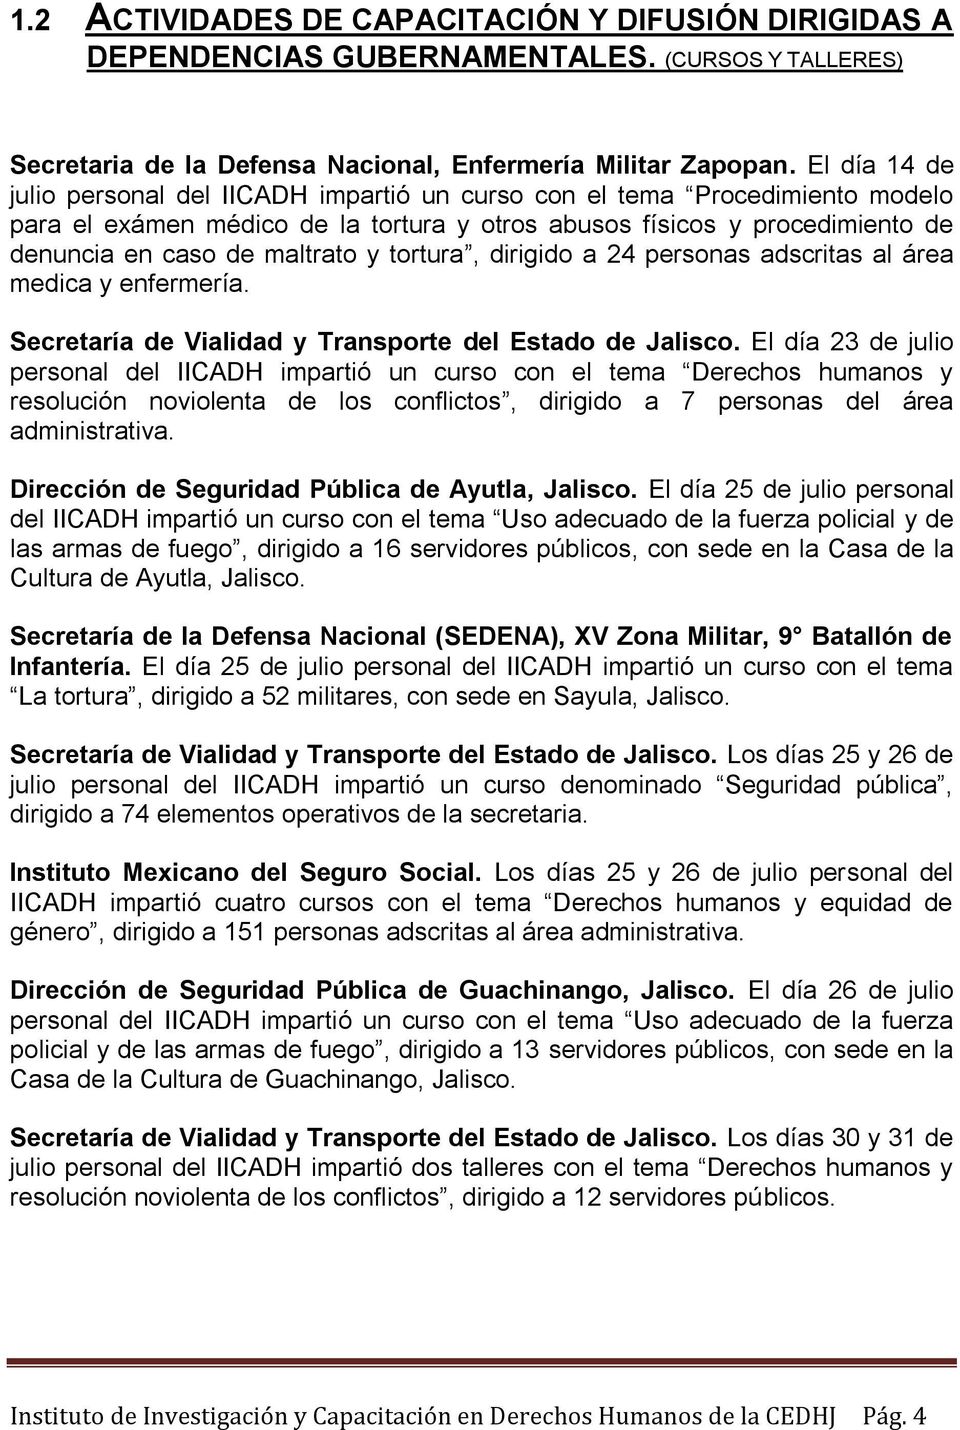 tortura, dirigido a 24 personas adscritas al área medica y enfermería. Secretaría de Vialidad y Transporte del Estado de Jalisco.